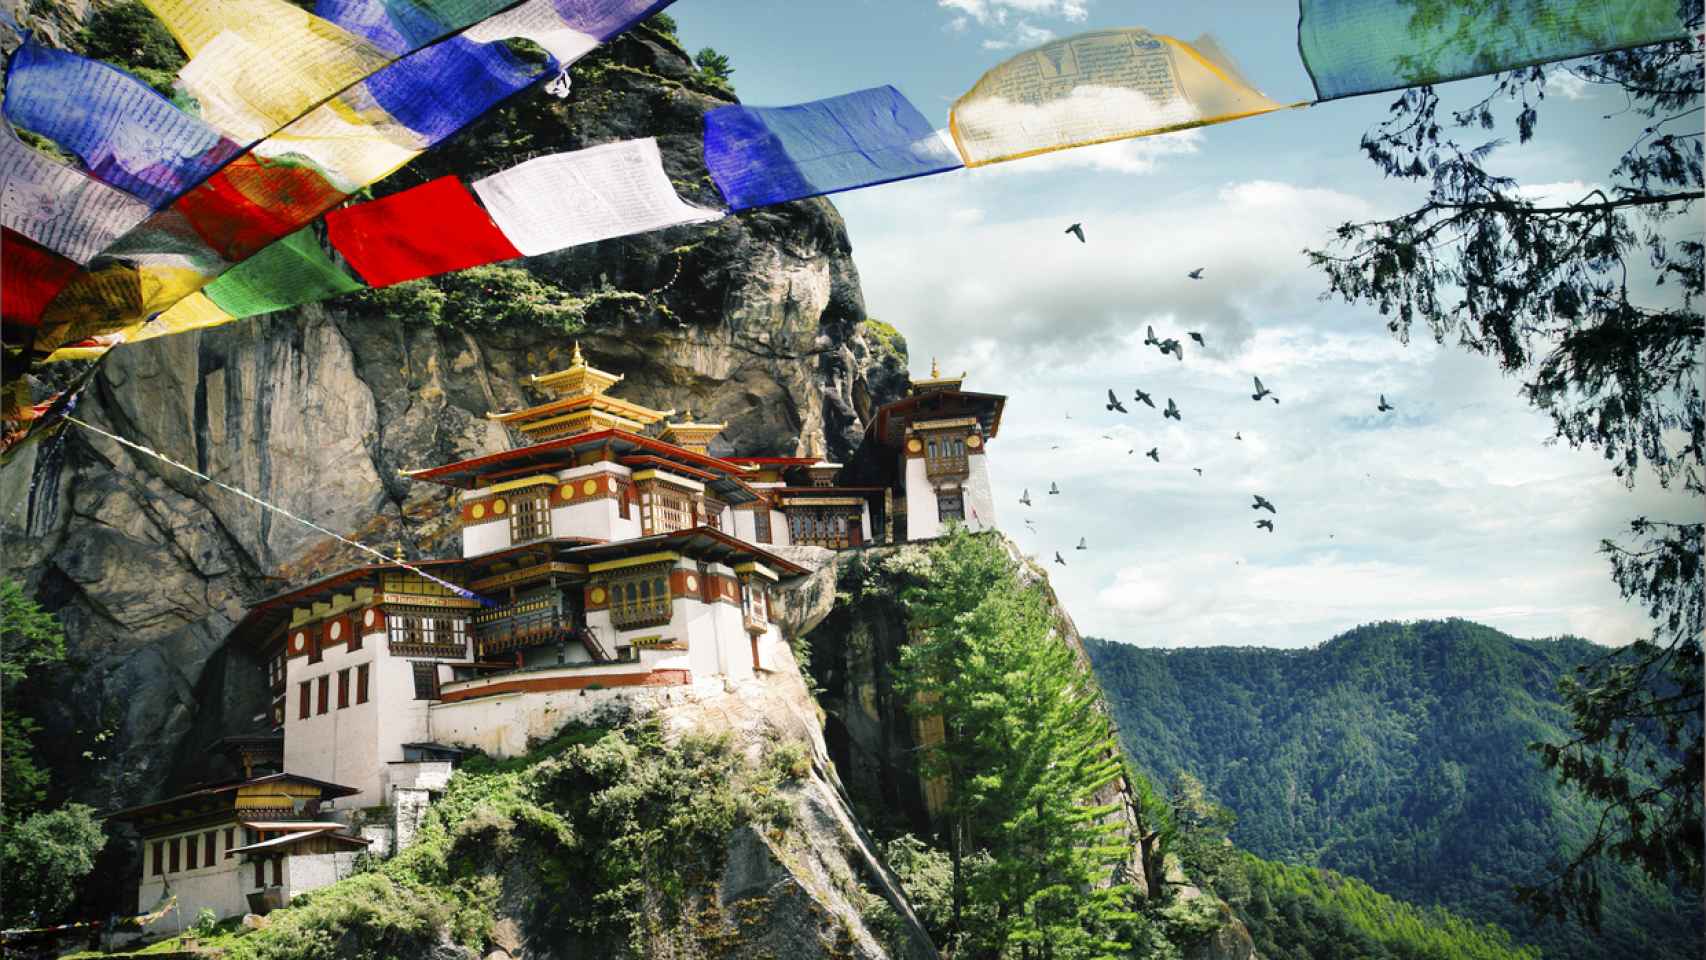 Bután cuenta con menos de 800.000 habitantes que comparten un mismo concepto: la Felicidad Interior Bruta (GNH).